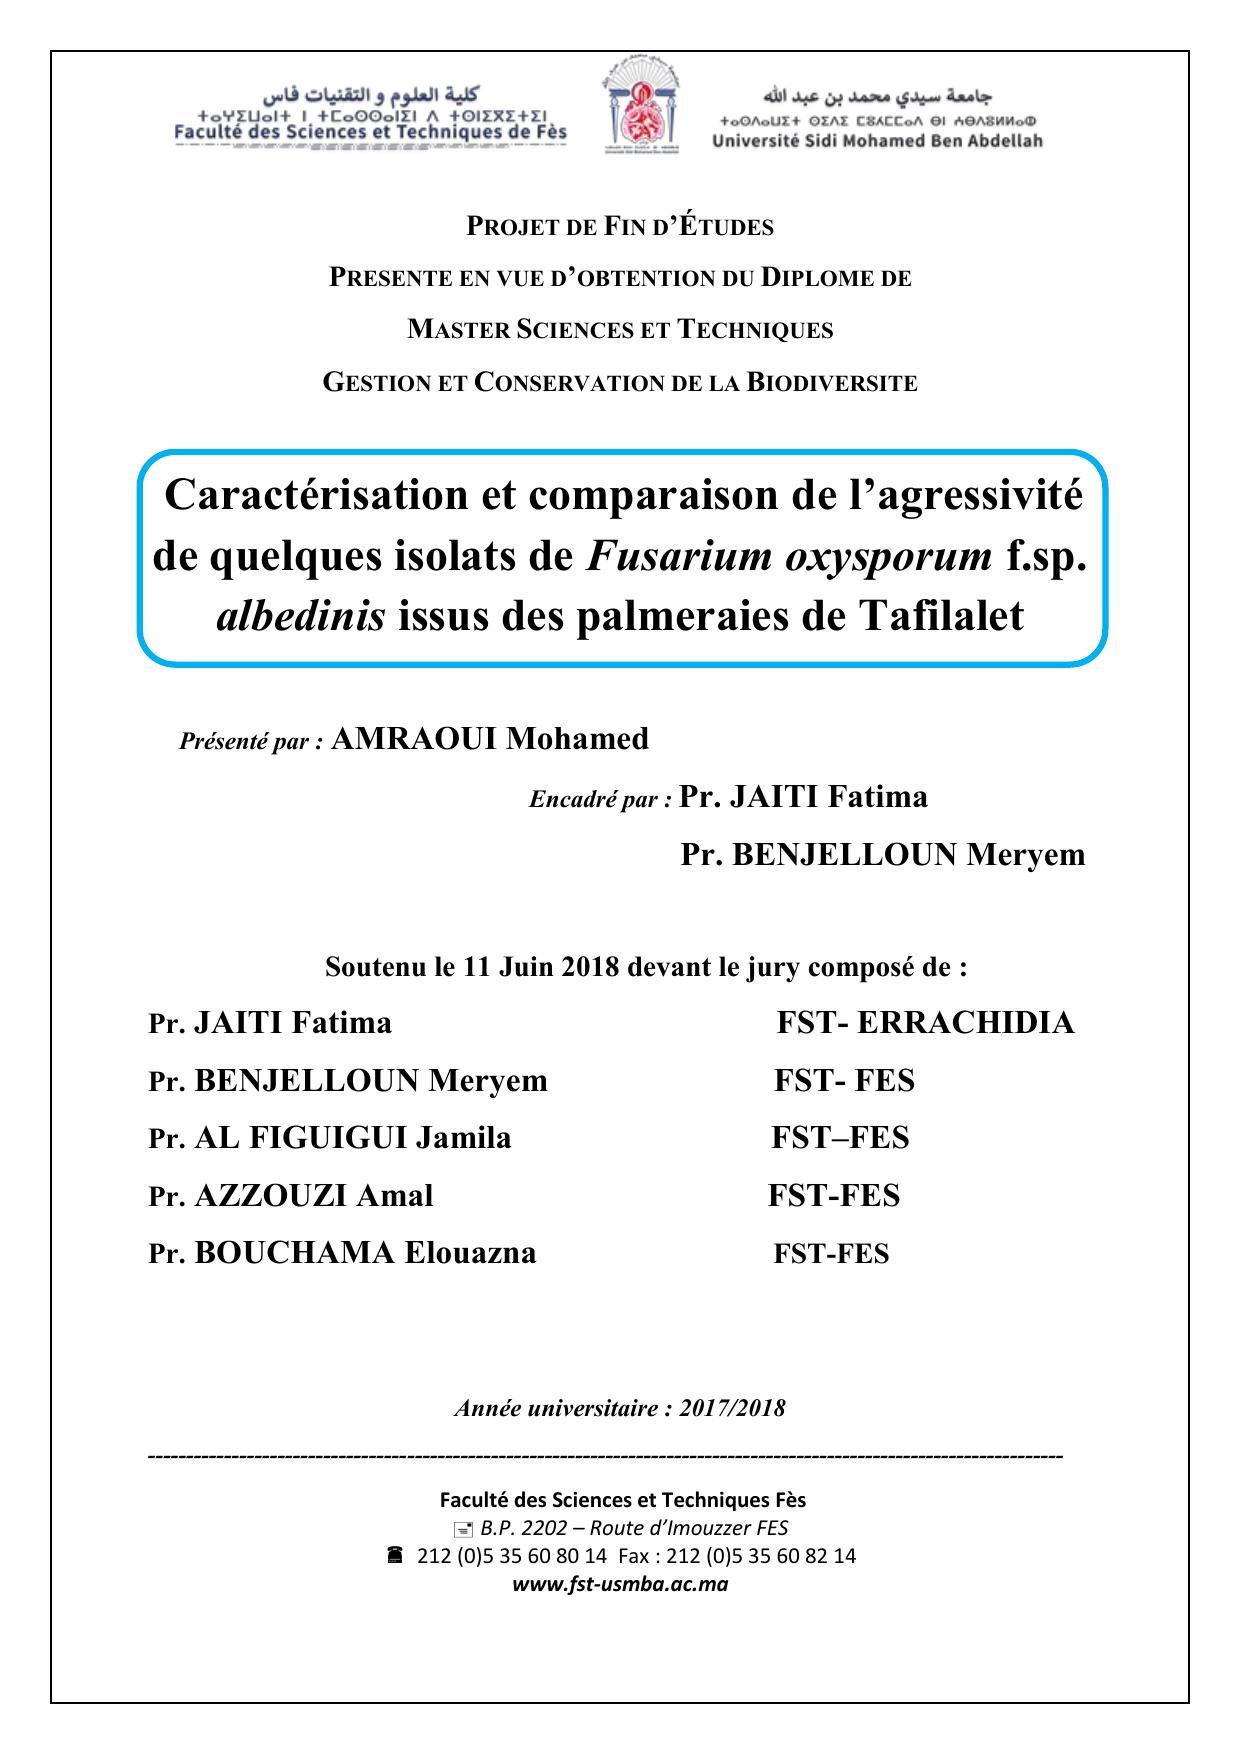 Caractérisation et comparaison de l’agressivité de quelques isolats de Fusarium oxysporum f.sp. albedinis issus des palmeraies de Tafilalet